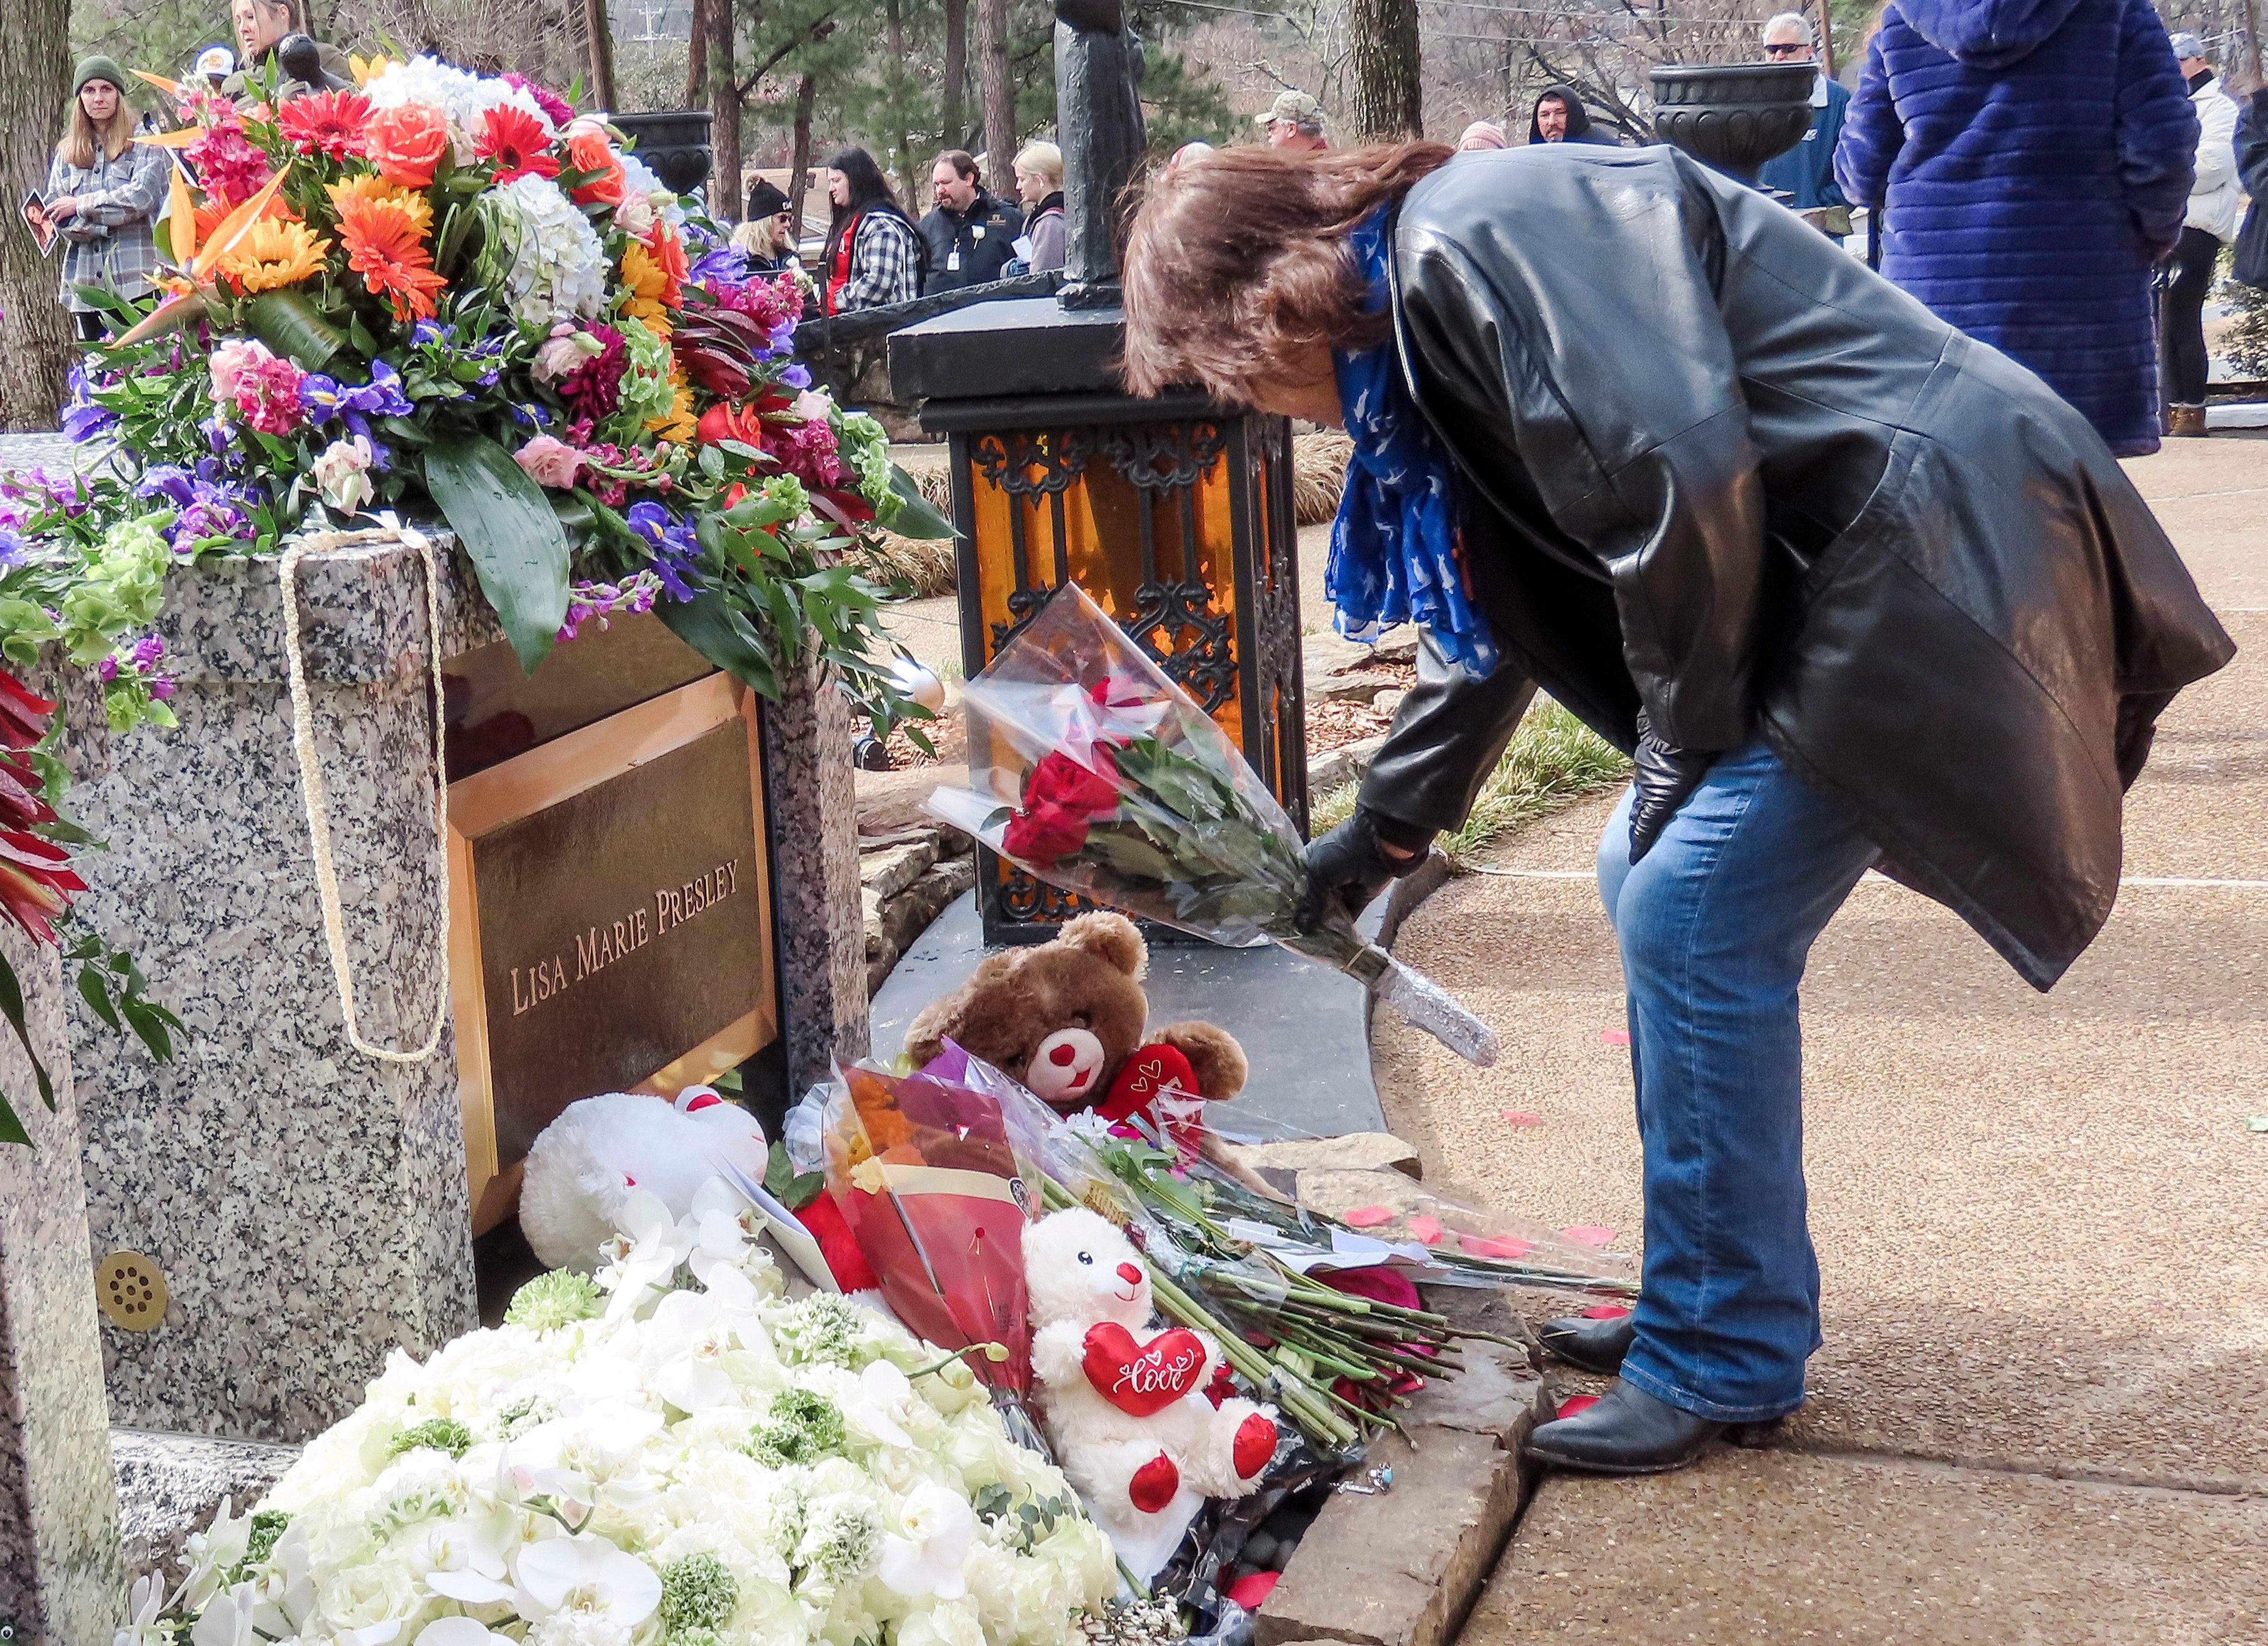 El funeral público de Lisa Marie Presley contó con la presencia de amigos y familiares. (Foto: EFE / Tannen Maury)